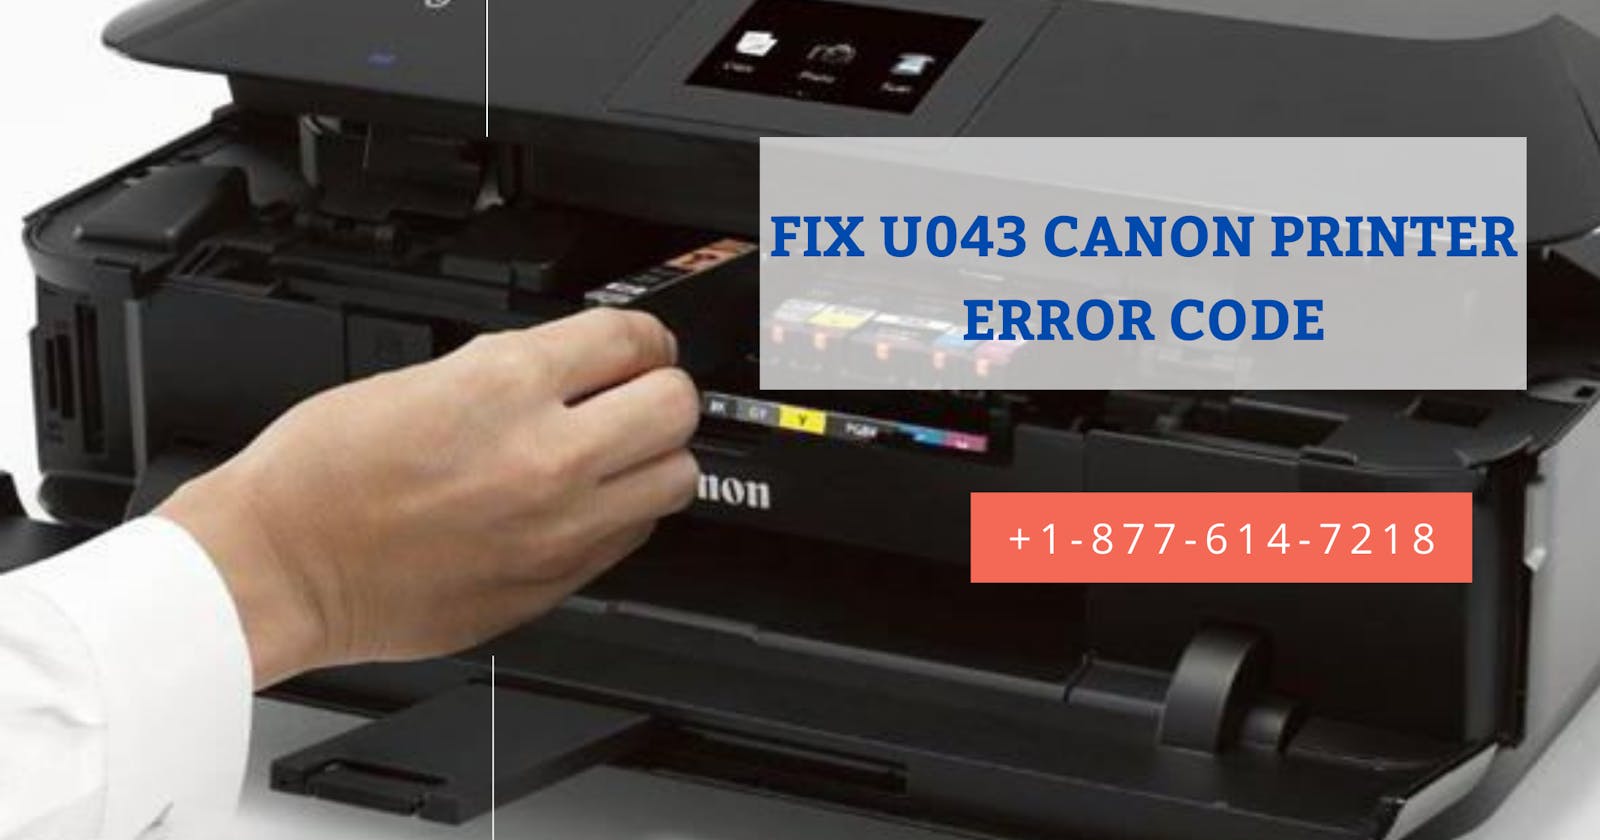 Solutions to Fix Canon Printer Error Code U043